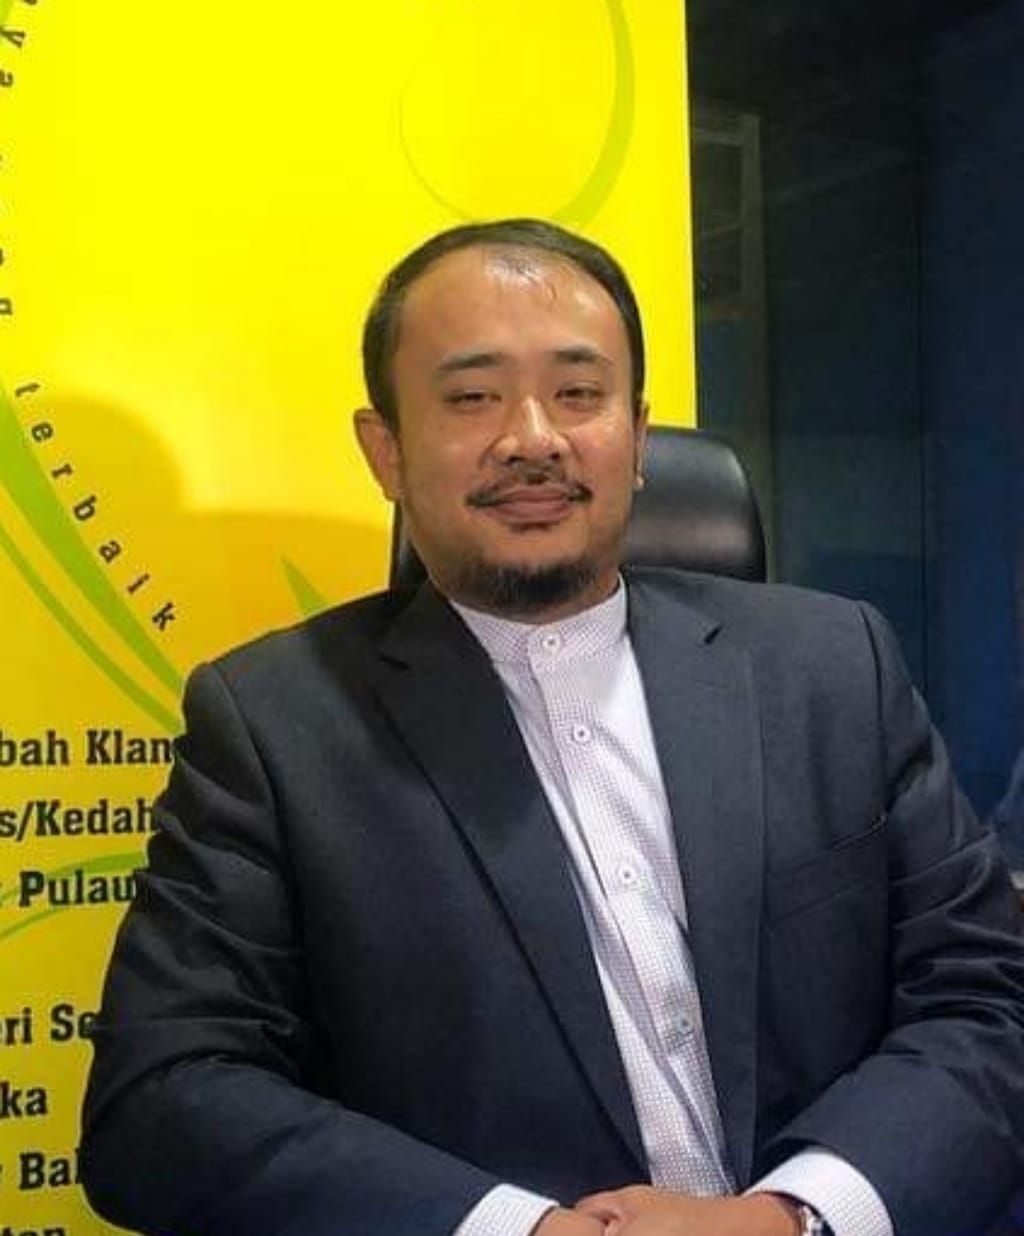 Pengurus Besar Syariah TH, Imran Mohammad Khayat